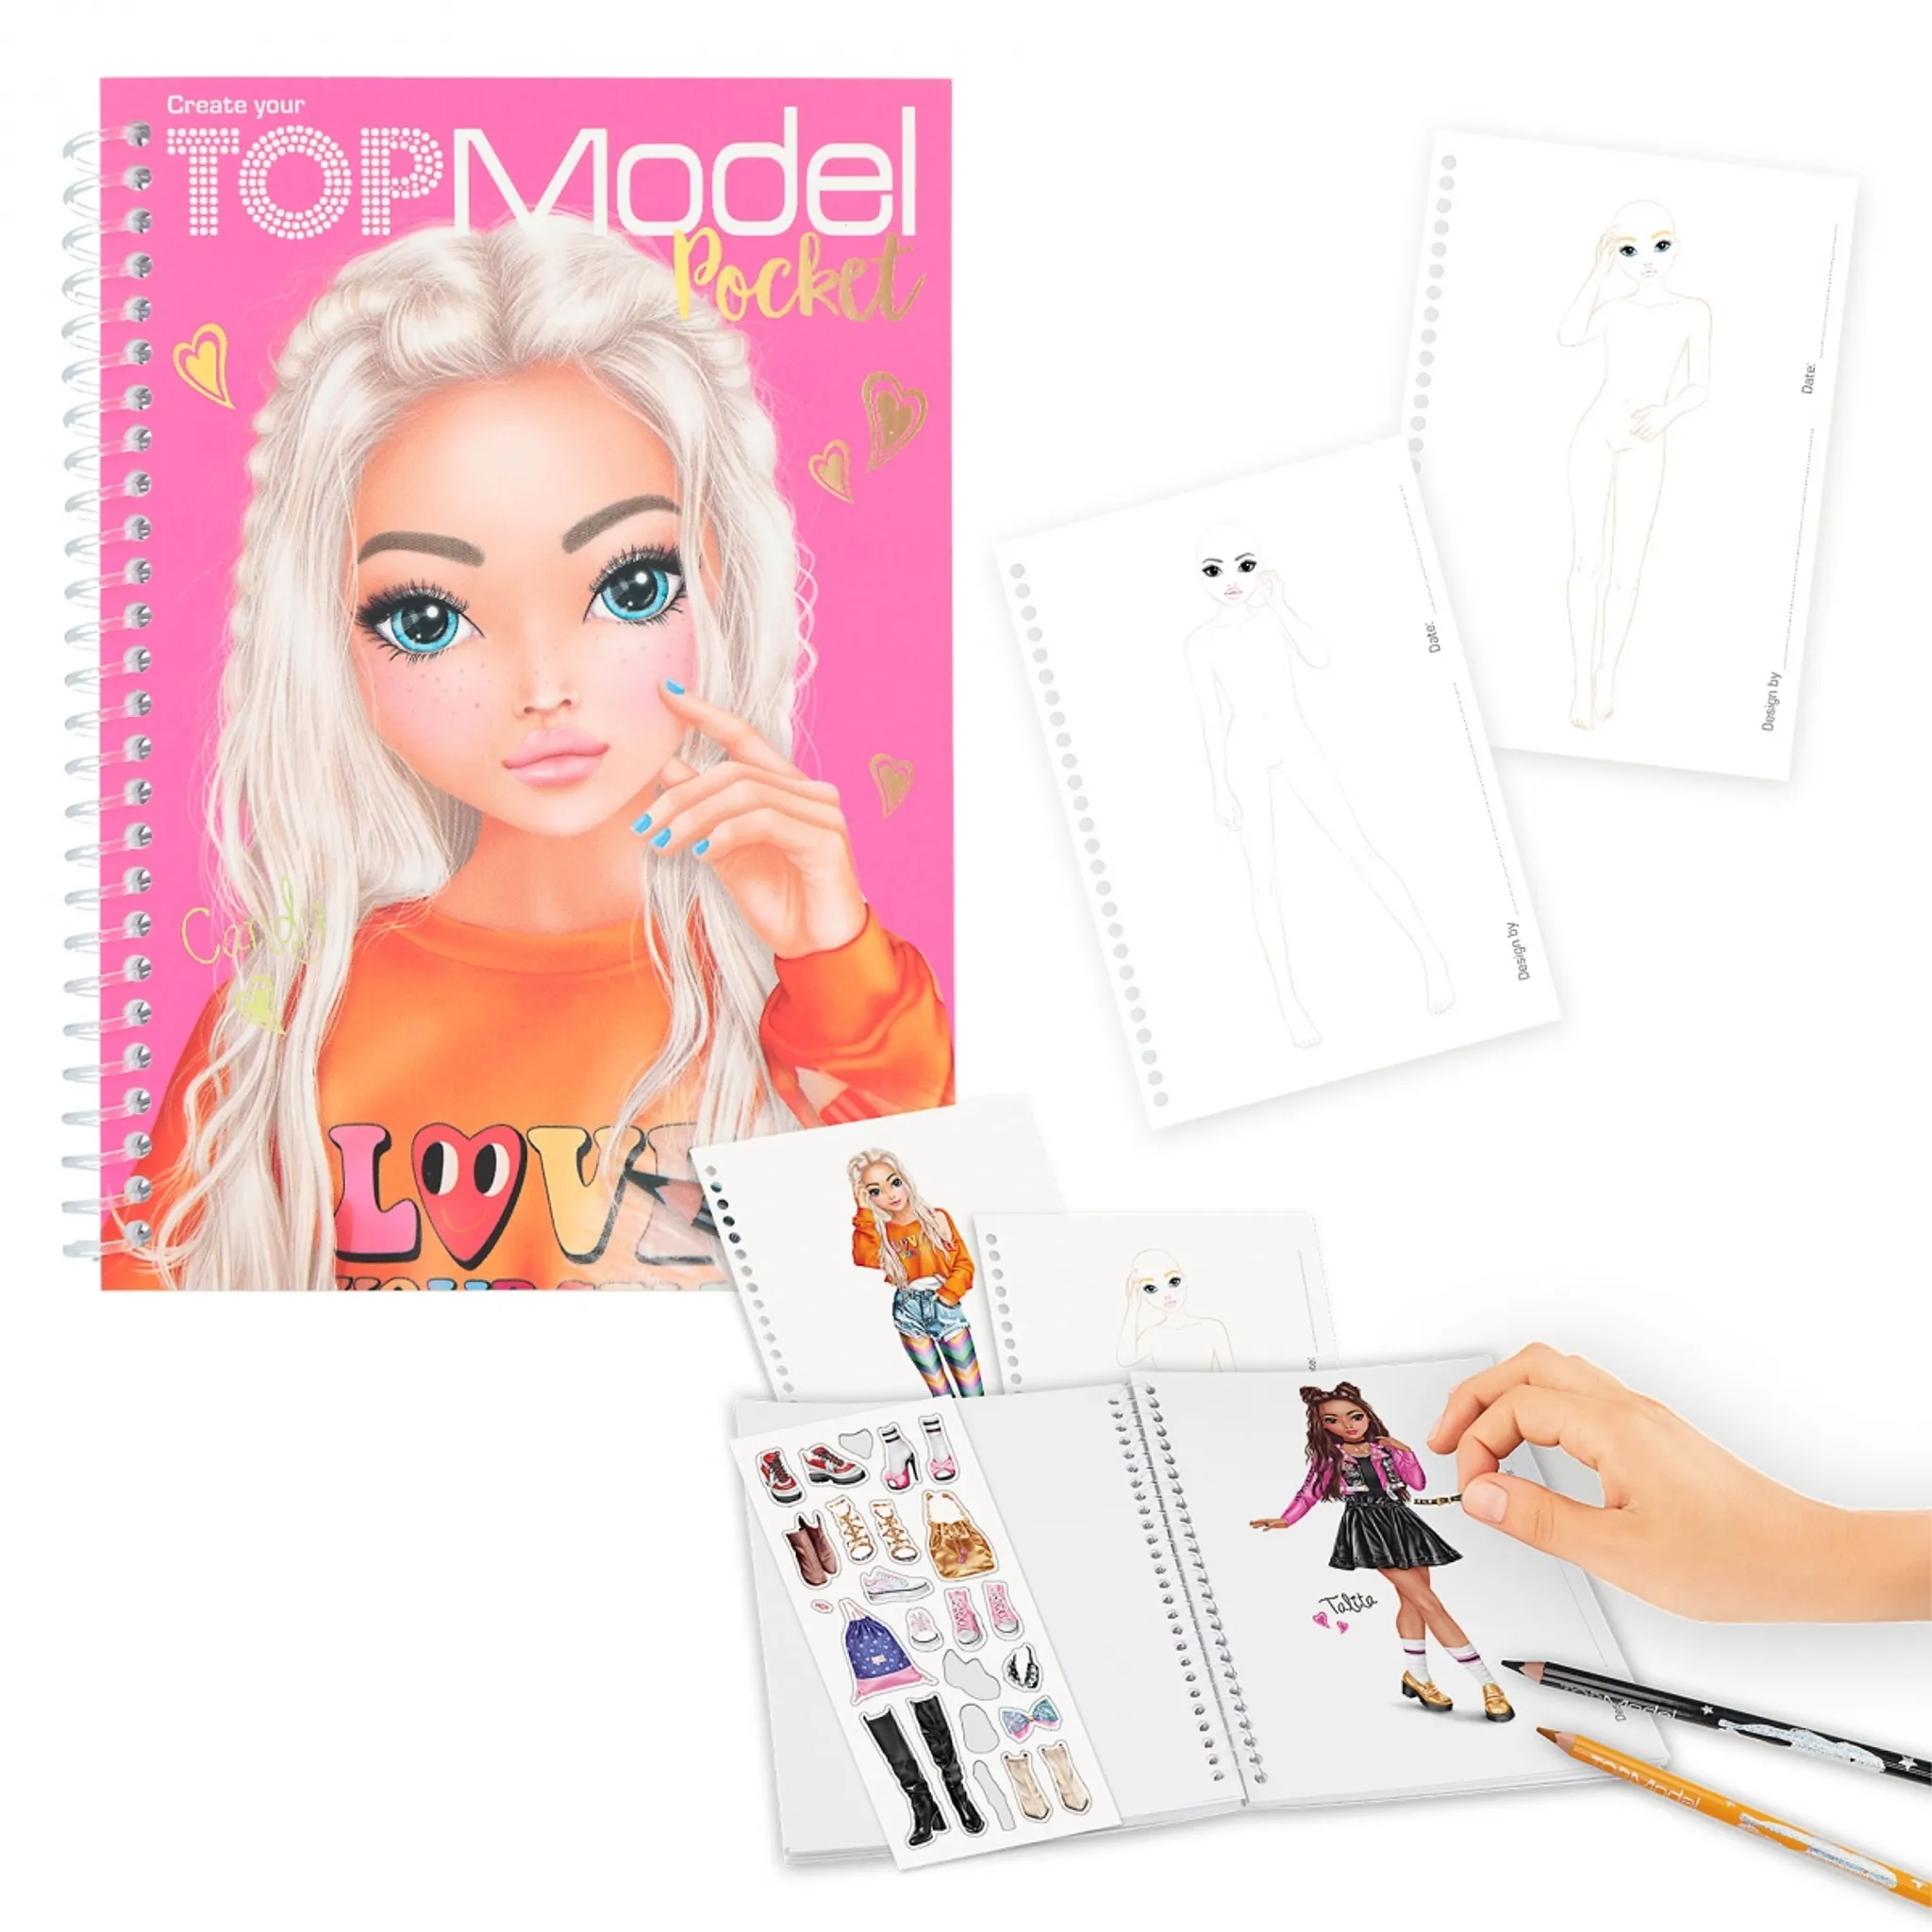 TOPModel: Malbücher, Sticker & Beauty-Produkte